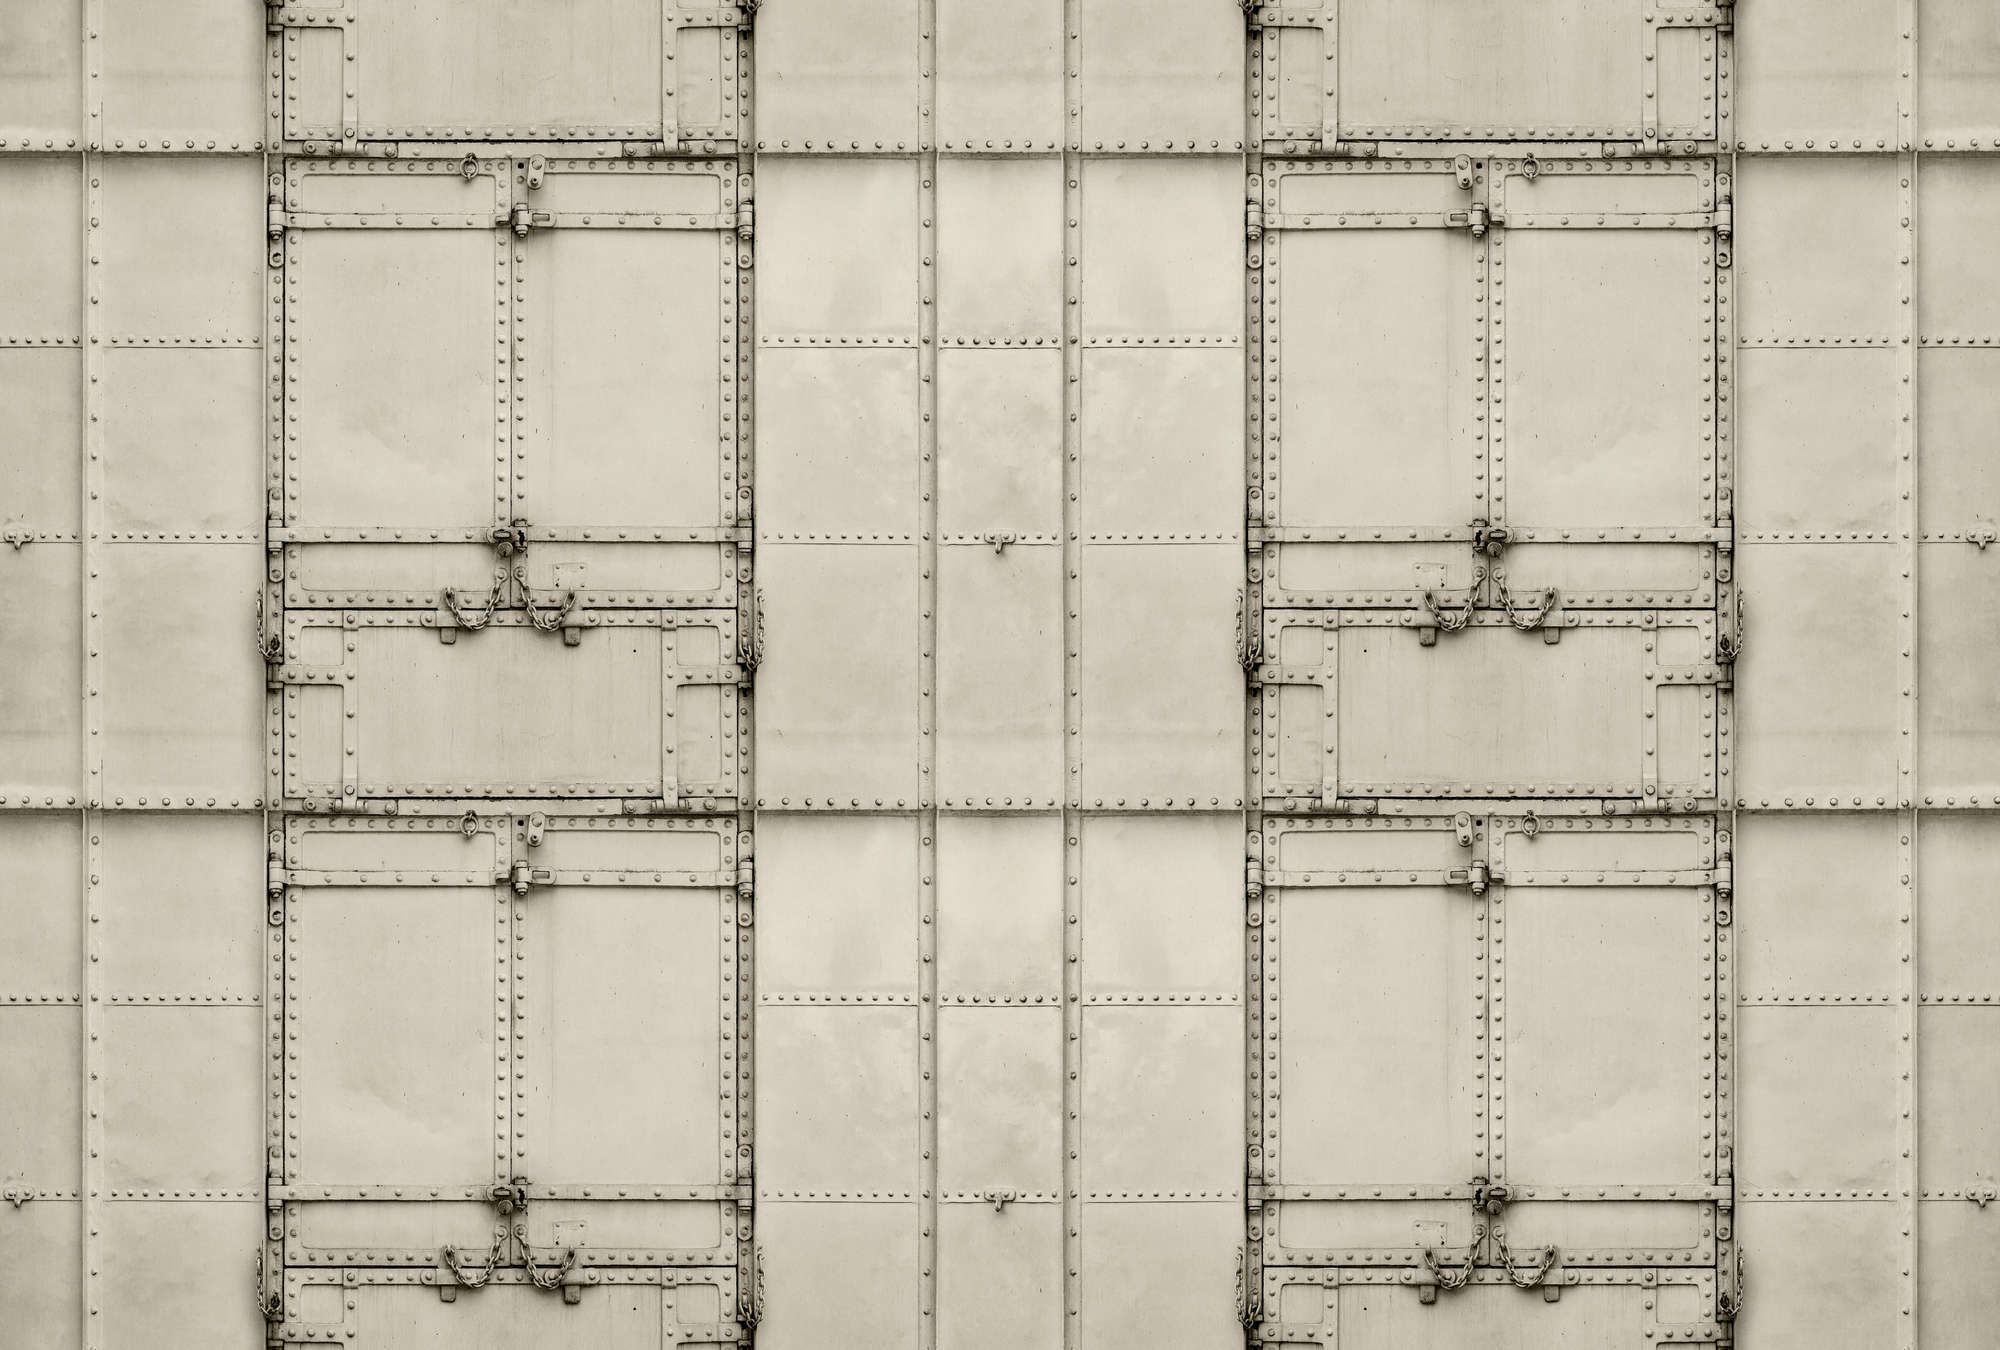             Digital behang »madurai« - Patchwork ontwerp met metalen platen met klinknagels & kettingen - Licht getextureerde niet-geweven stof
        